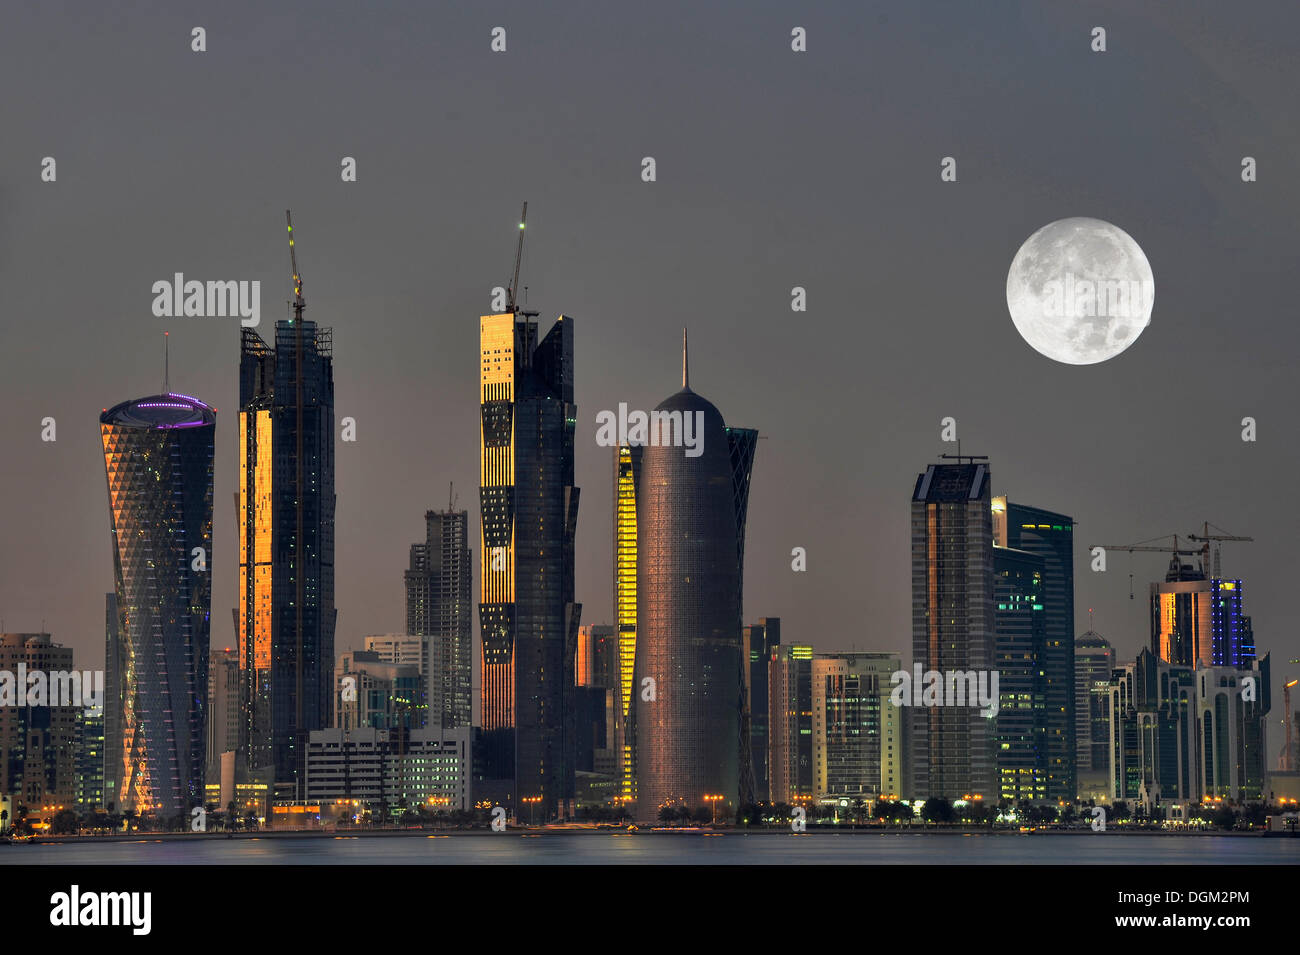 Dämmerung geschossen, Skyline von Doha mit dem Tornado Tower, Peilturm, Frieden Towera, Al-Thani Turm und dem Mond, Doha, Katar Stockfoto